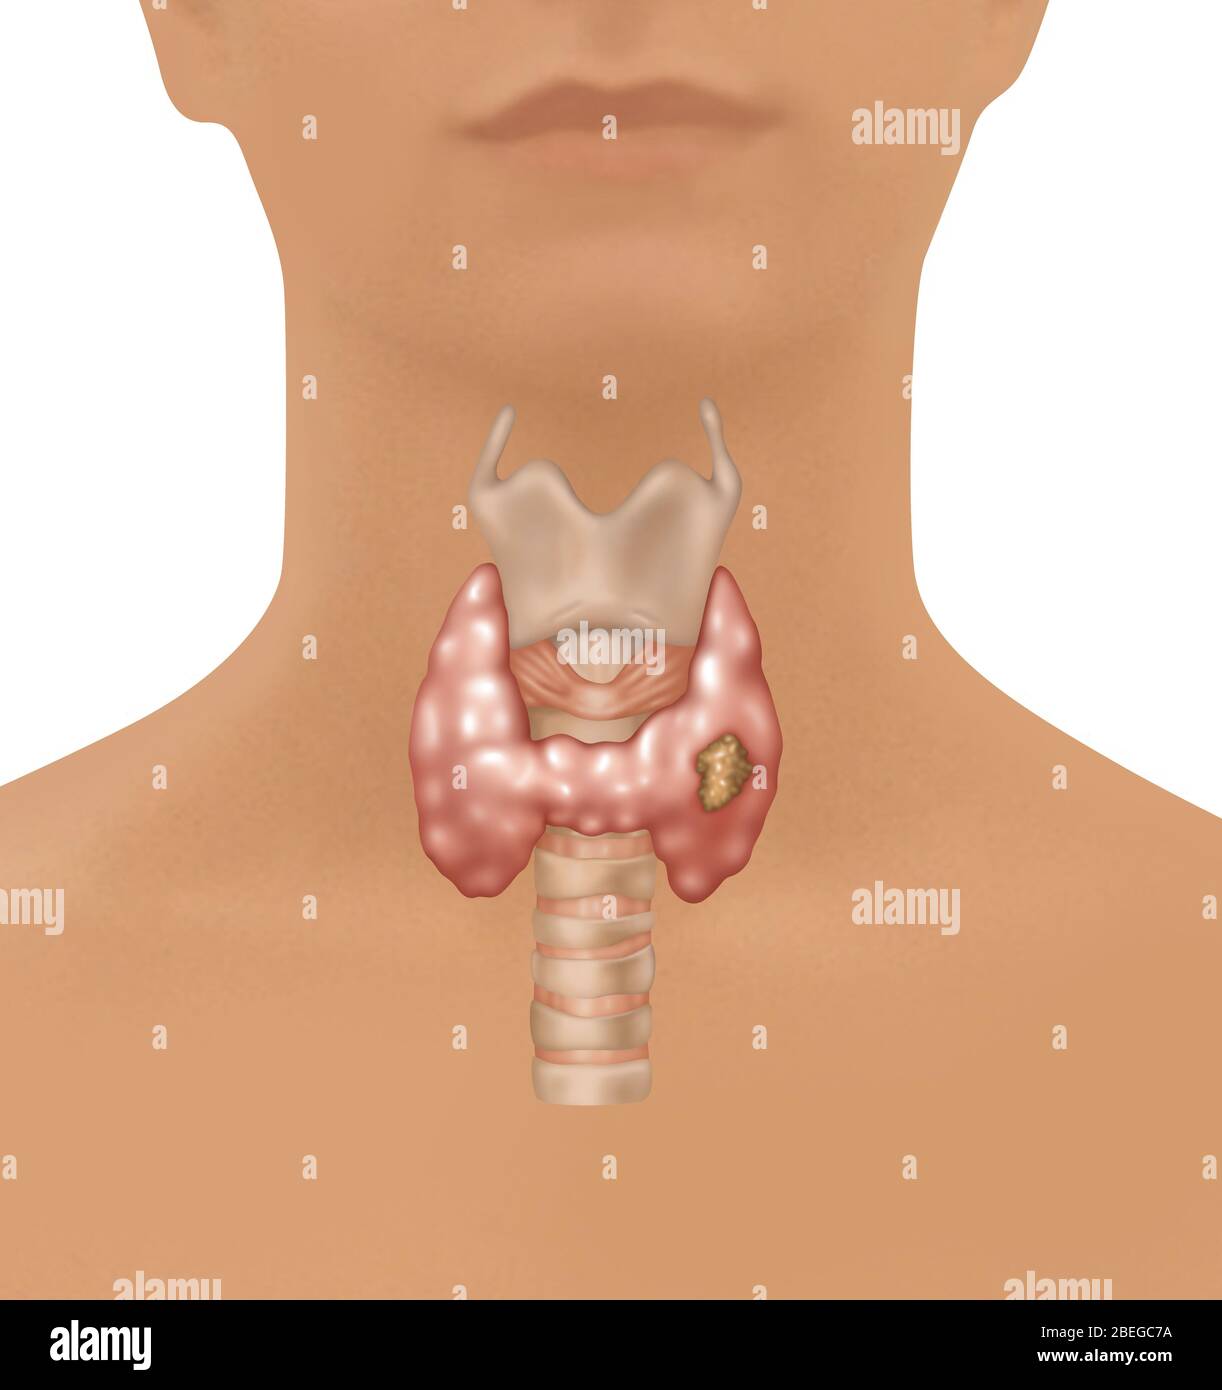 Illustration montrant l'emplacement du larynx, de la glande thyroïde et de la trachée dans une figure femelle. Une croissance maligne peut être observée dans la partie inférieure droite de la thyroïde. Banque D'Images